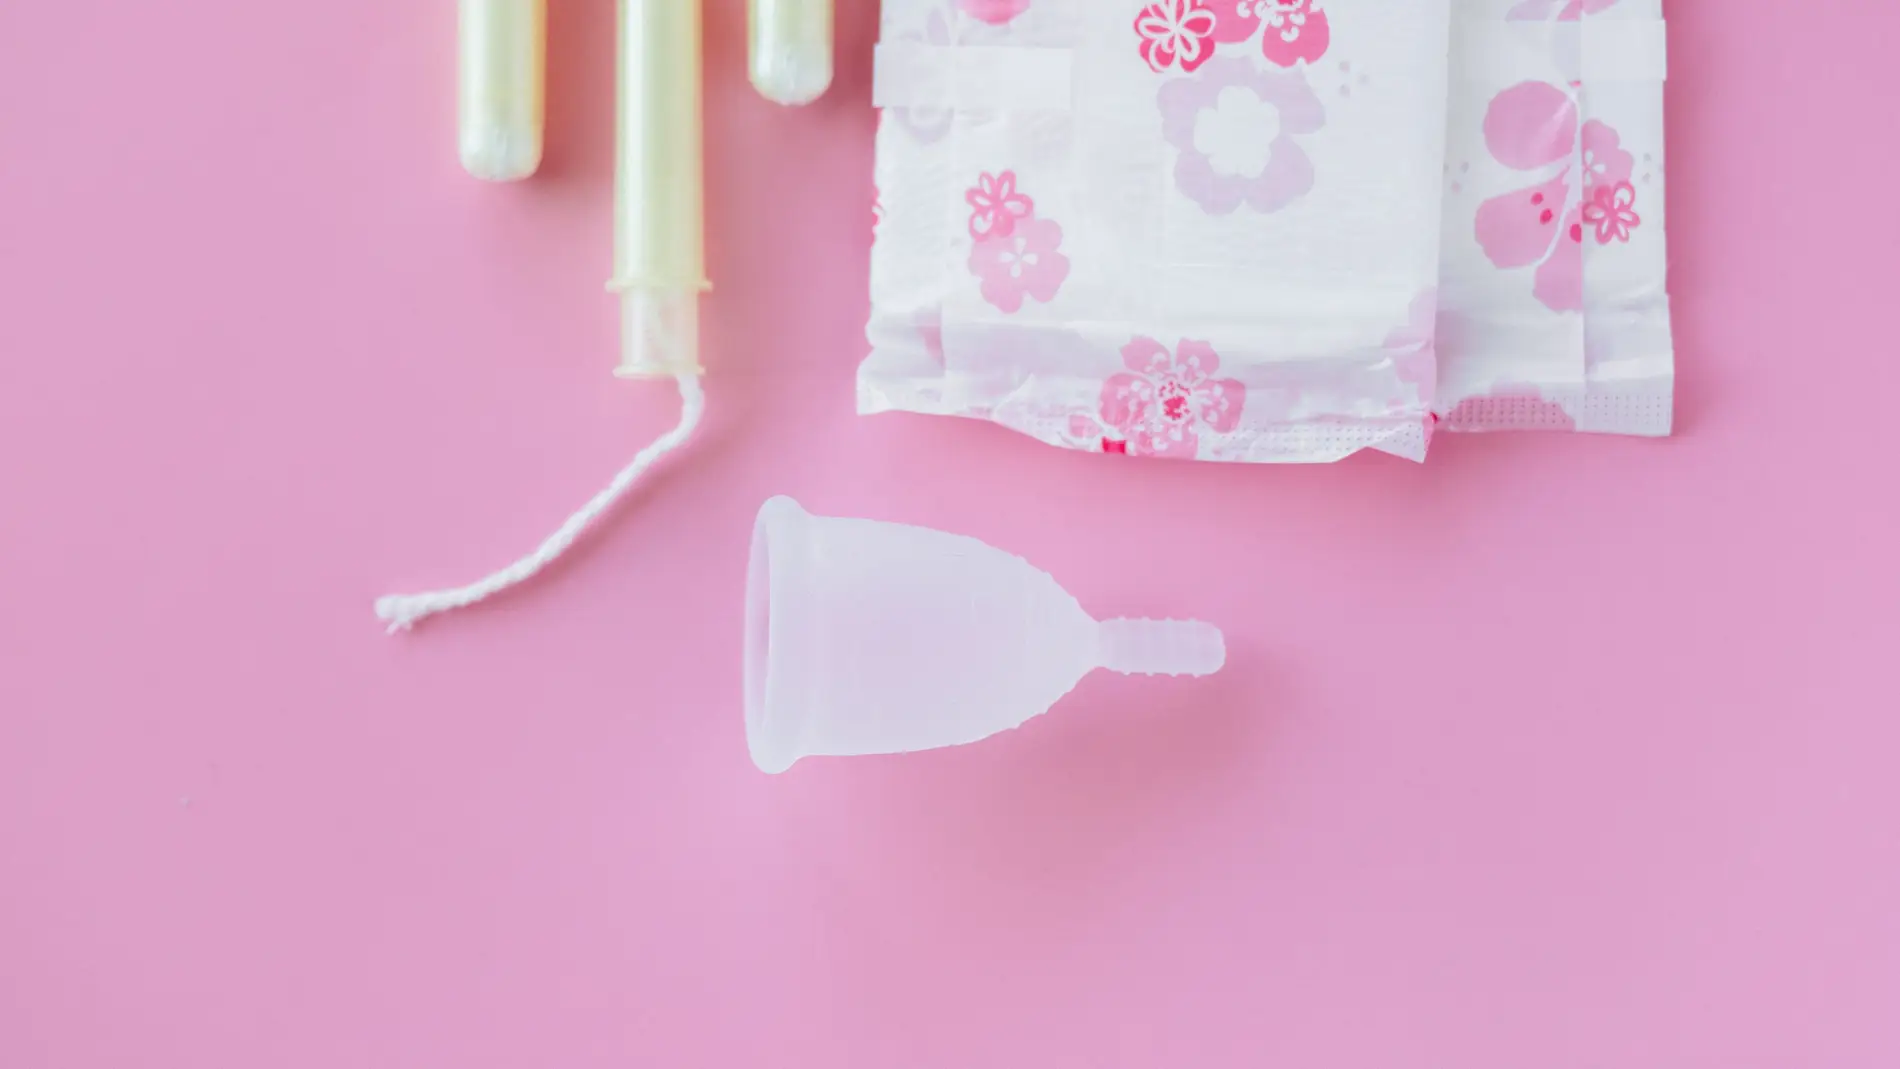 Buscan inciativa en CdMx que productos de higiene menstrual sean gratuitos